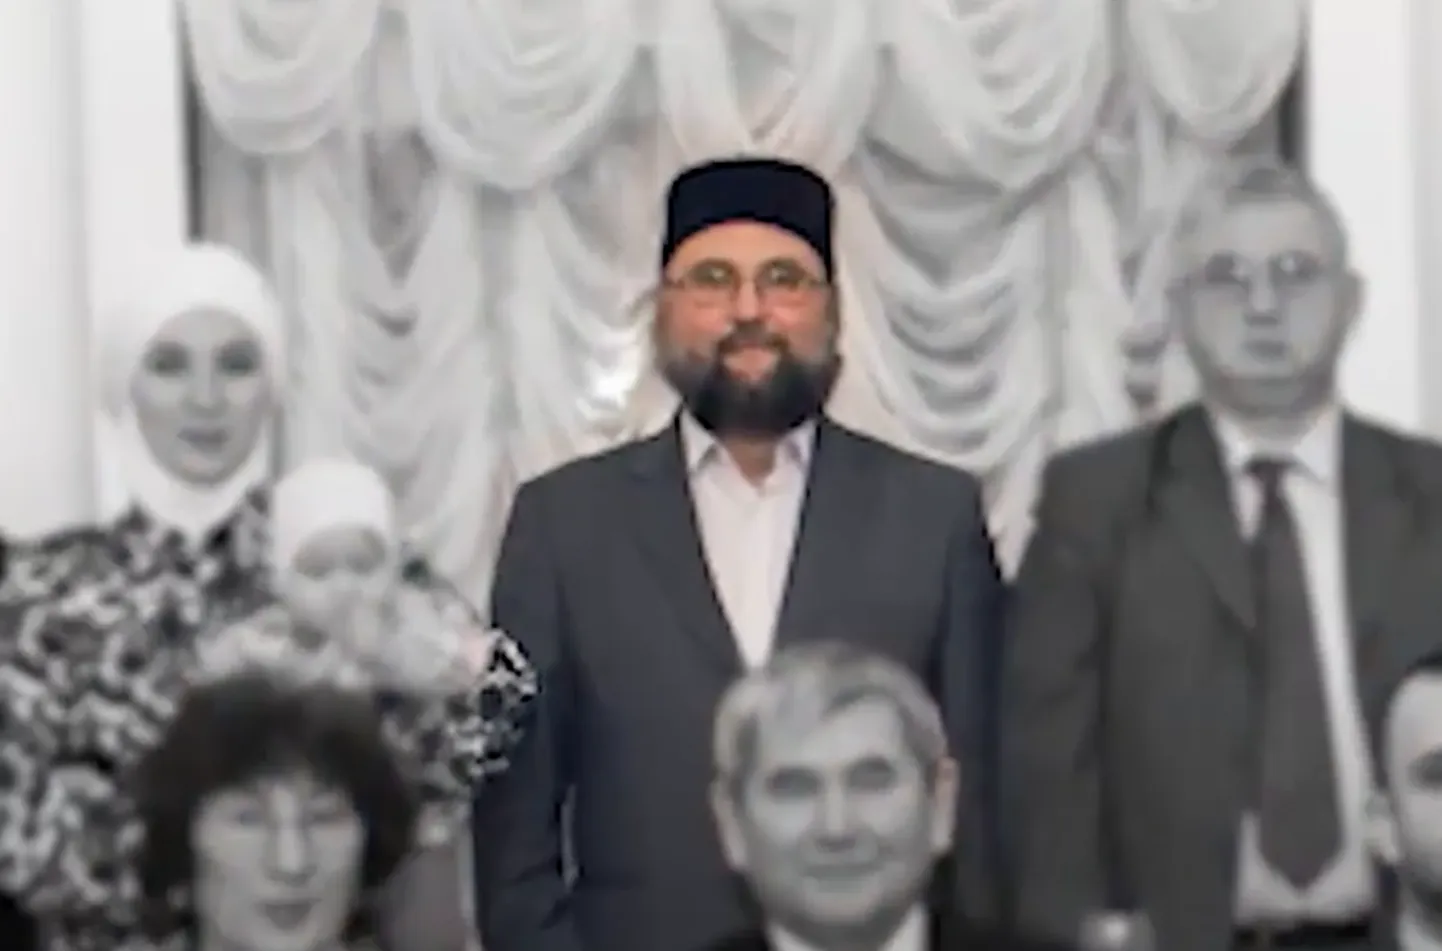 Sel aastal sattusid KAPO aastaraamatusse lausa kaks Eestis tegutsevat usuliidrit – üks neist Eesti islami koguduse peaimaam Ildar Muhhamedšin (pildil).